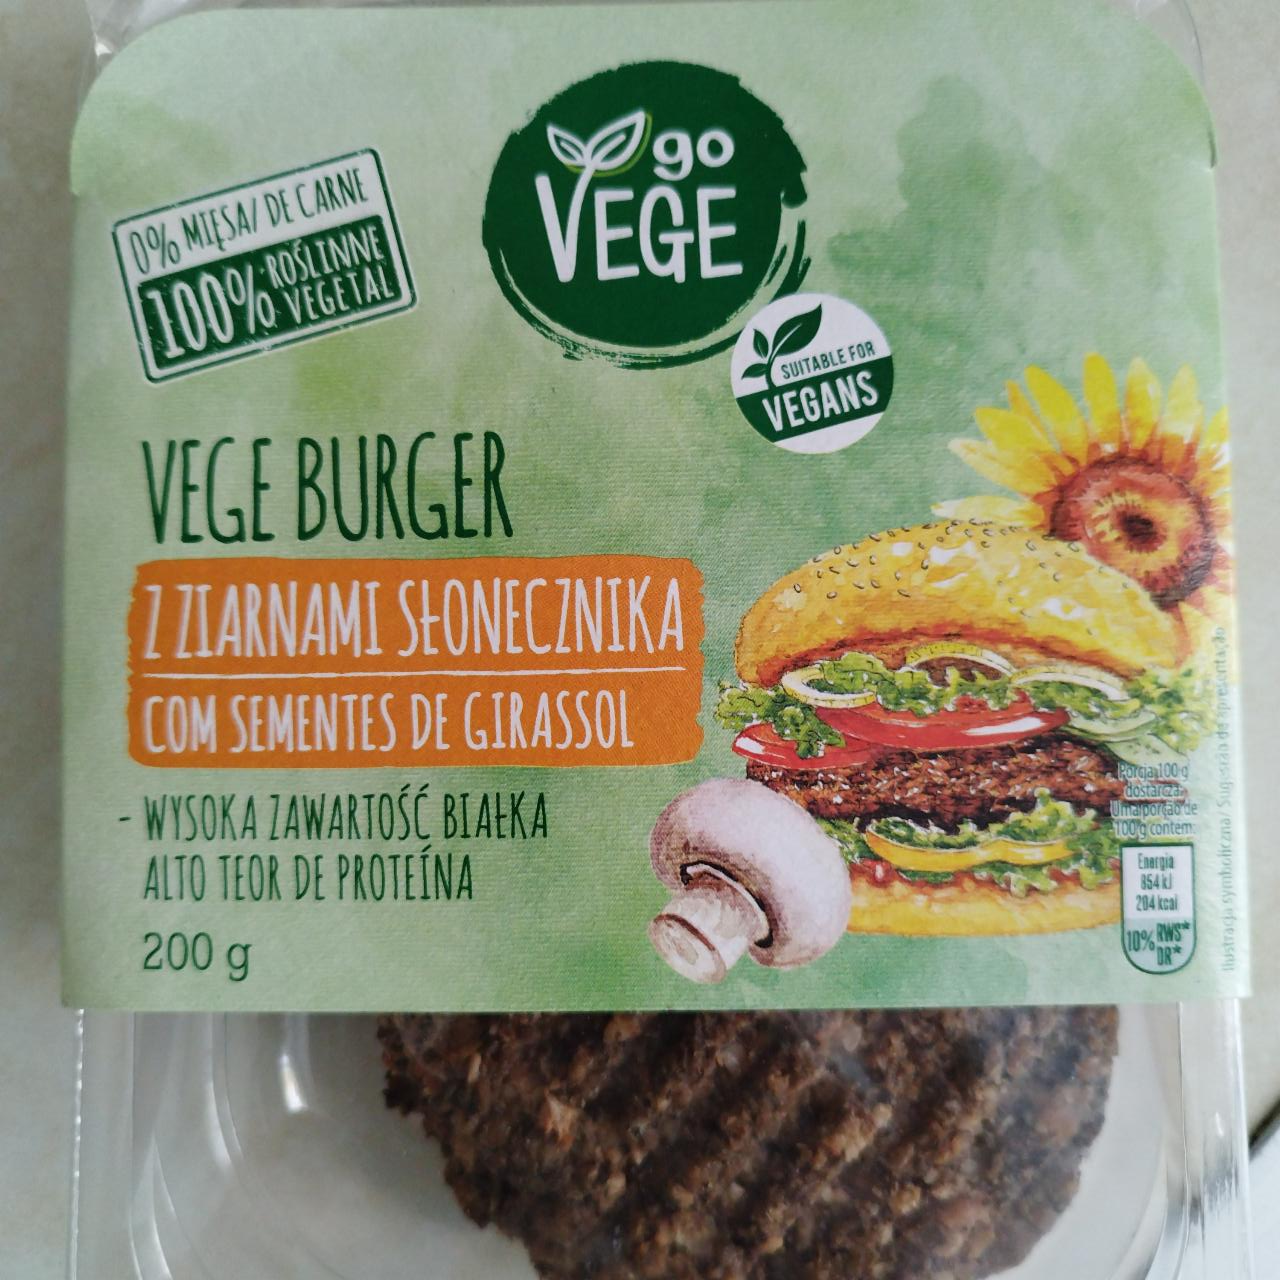 Zdjęcia - Vege Burger z ziarnami słonecznika Go Vege